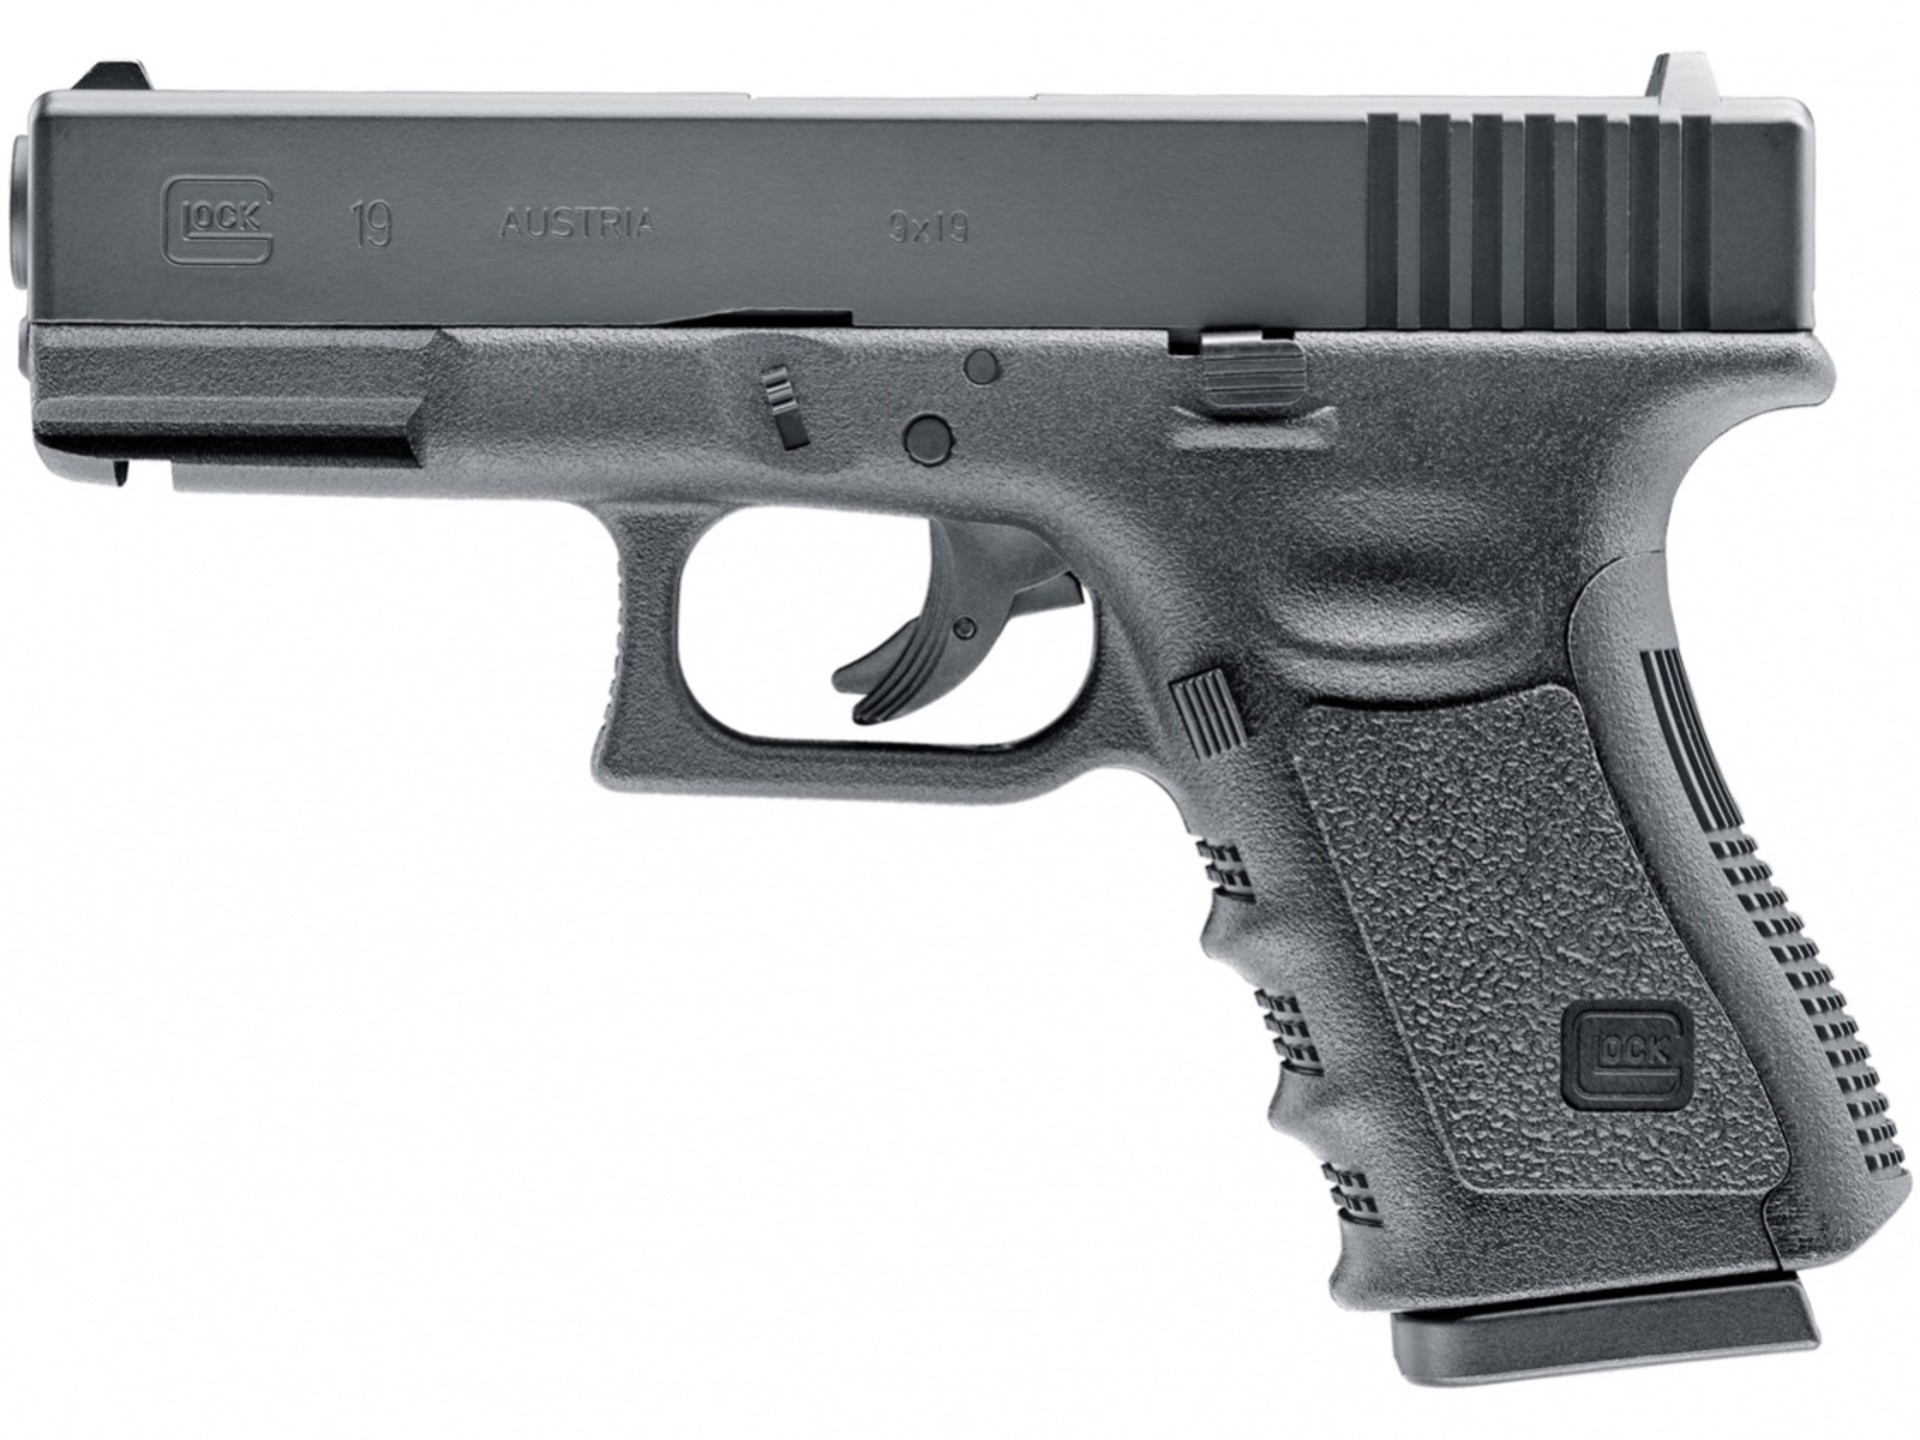 Vzduchová pistole Glock 19 cal.4,5mm